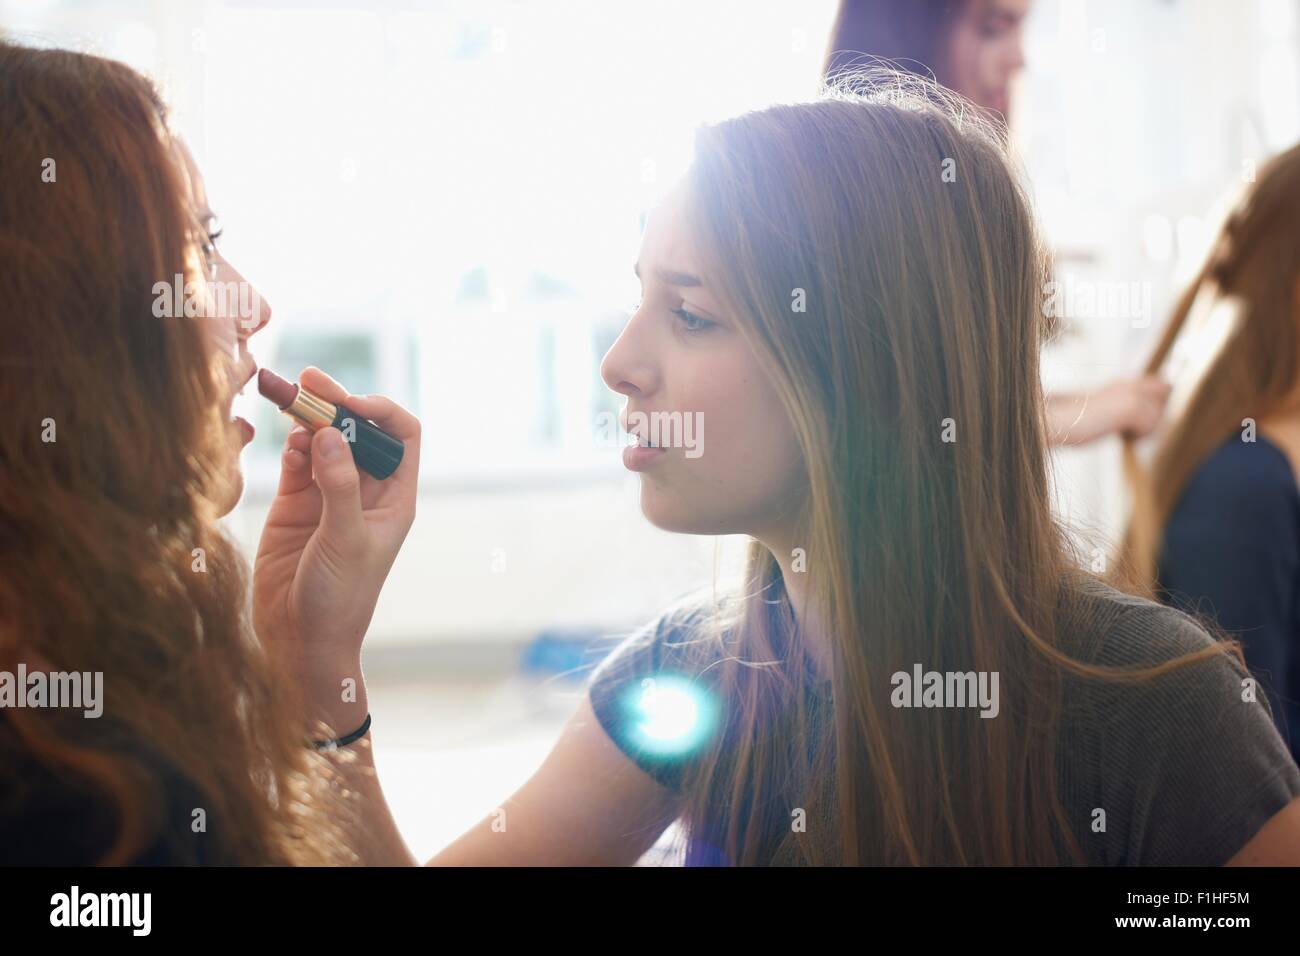 Teenage girl having lipstick applied by best friend in bedroom Stock Photo